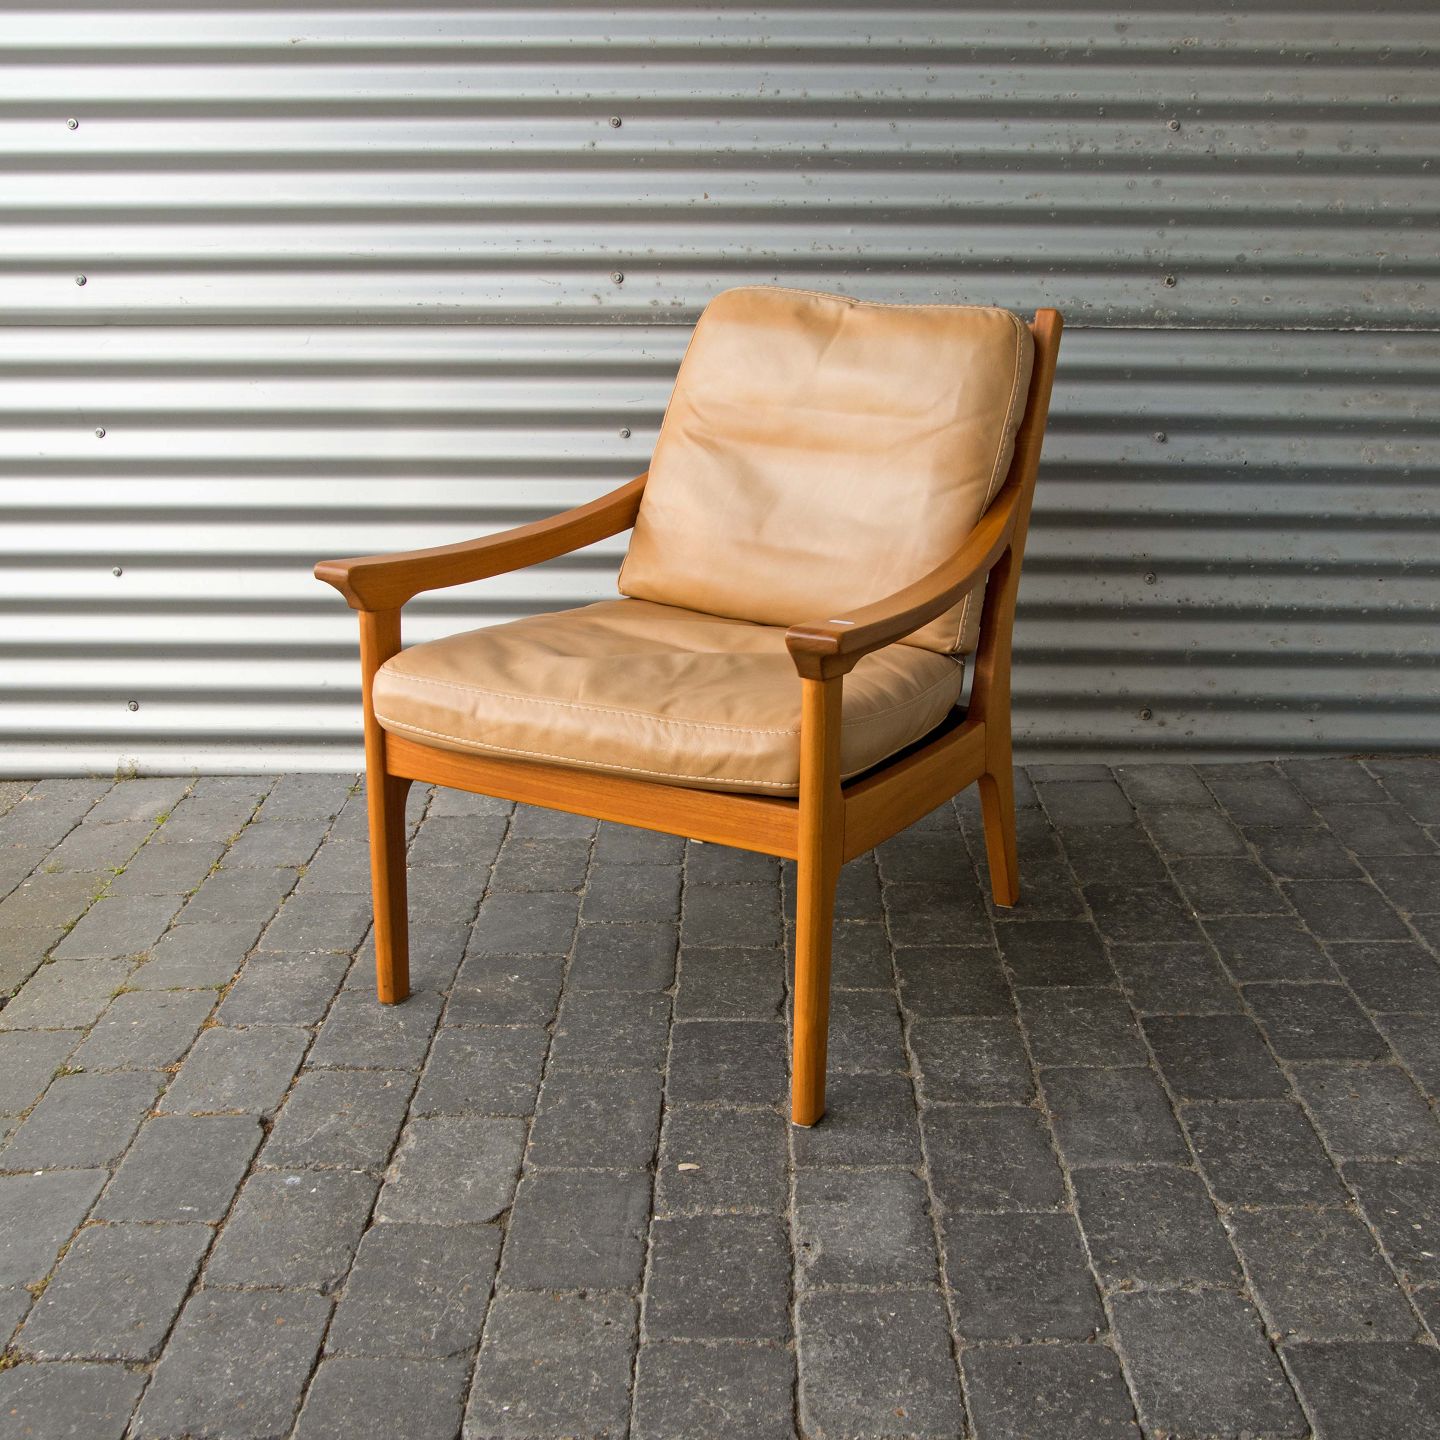 Udrydde kul Regelmæssighed KAD ringen - Dansk design * Lænestol i lyst træ - Dansk design * Lænestol i  lyst træ